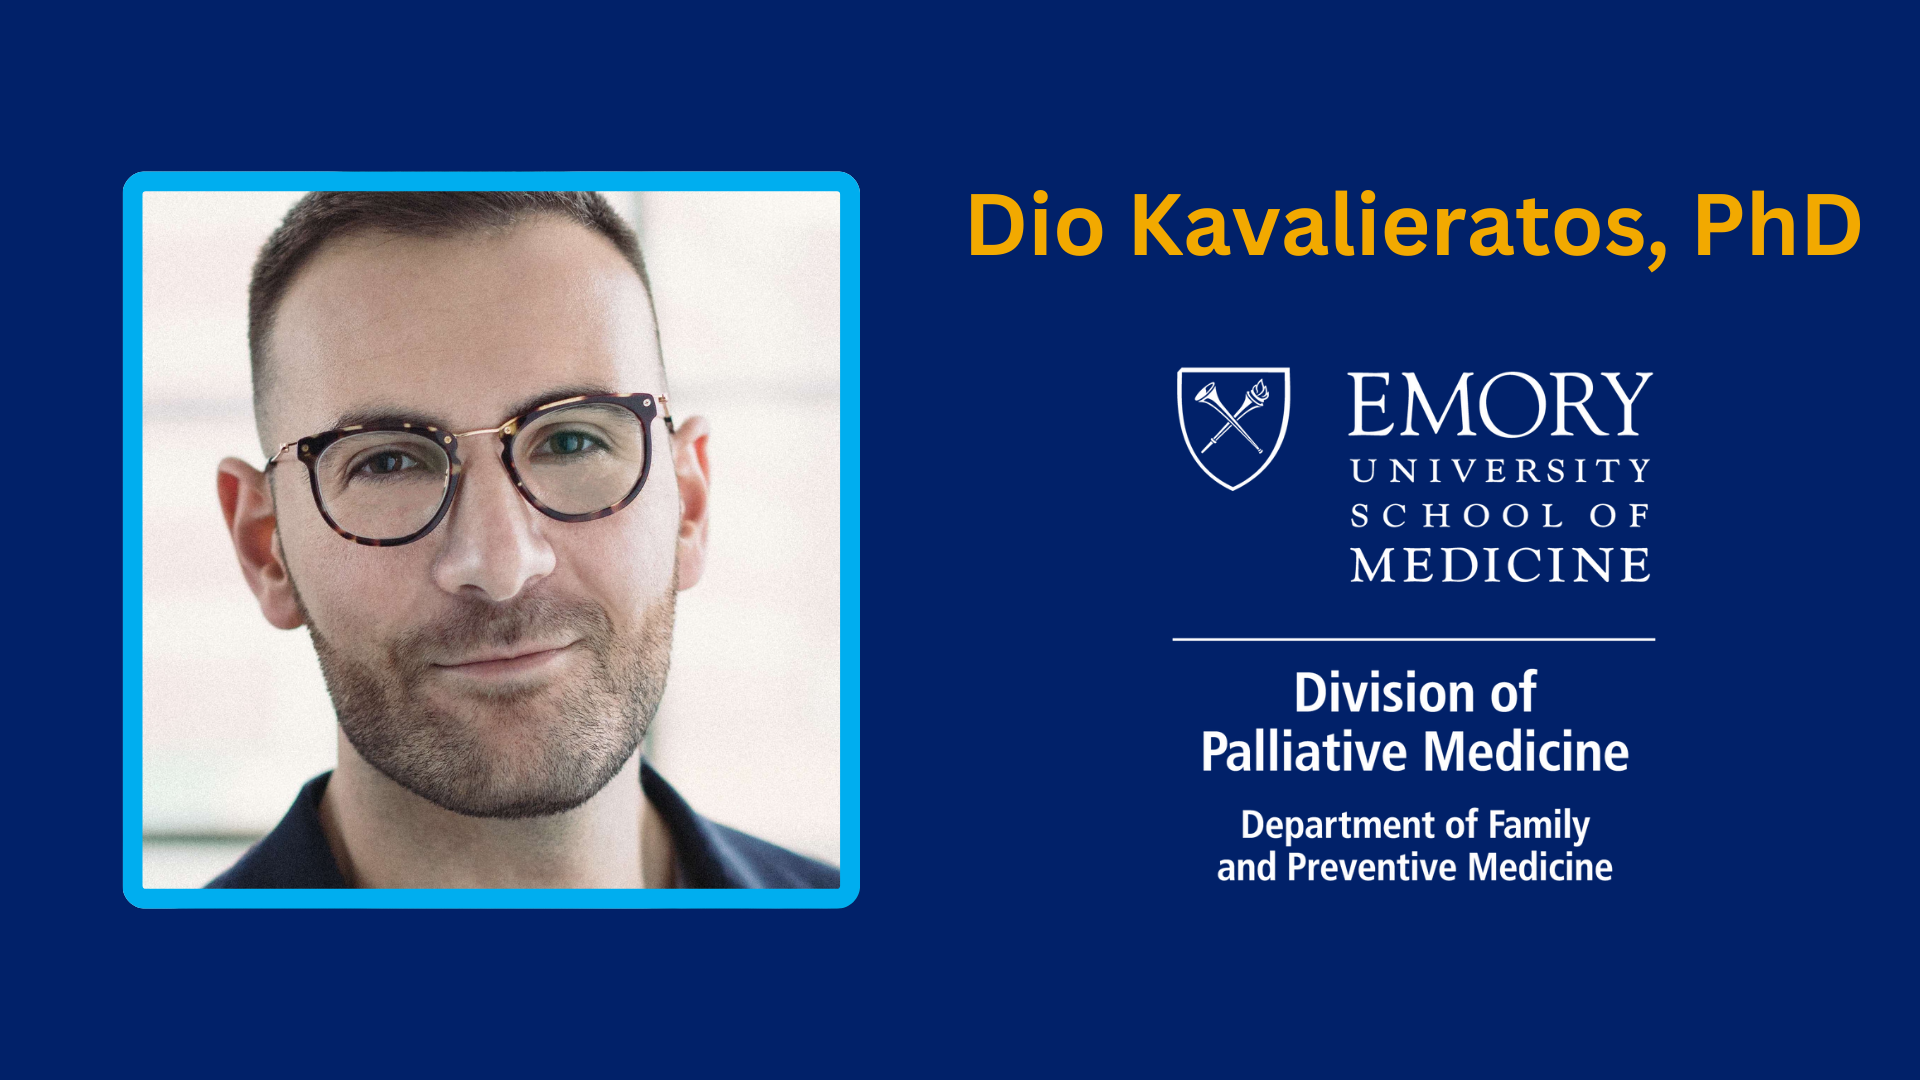 Dr. Dio Kavalieratos, Division of Palliative Medicine, Department of Family &amp; Preventive Medicine